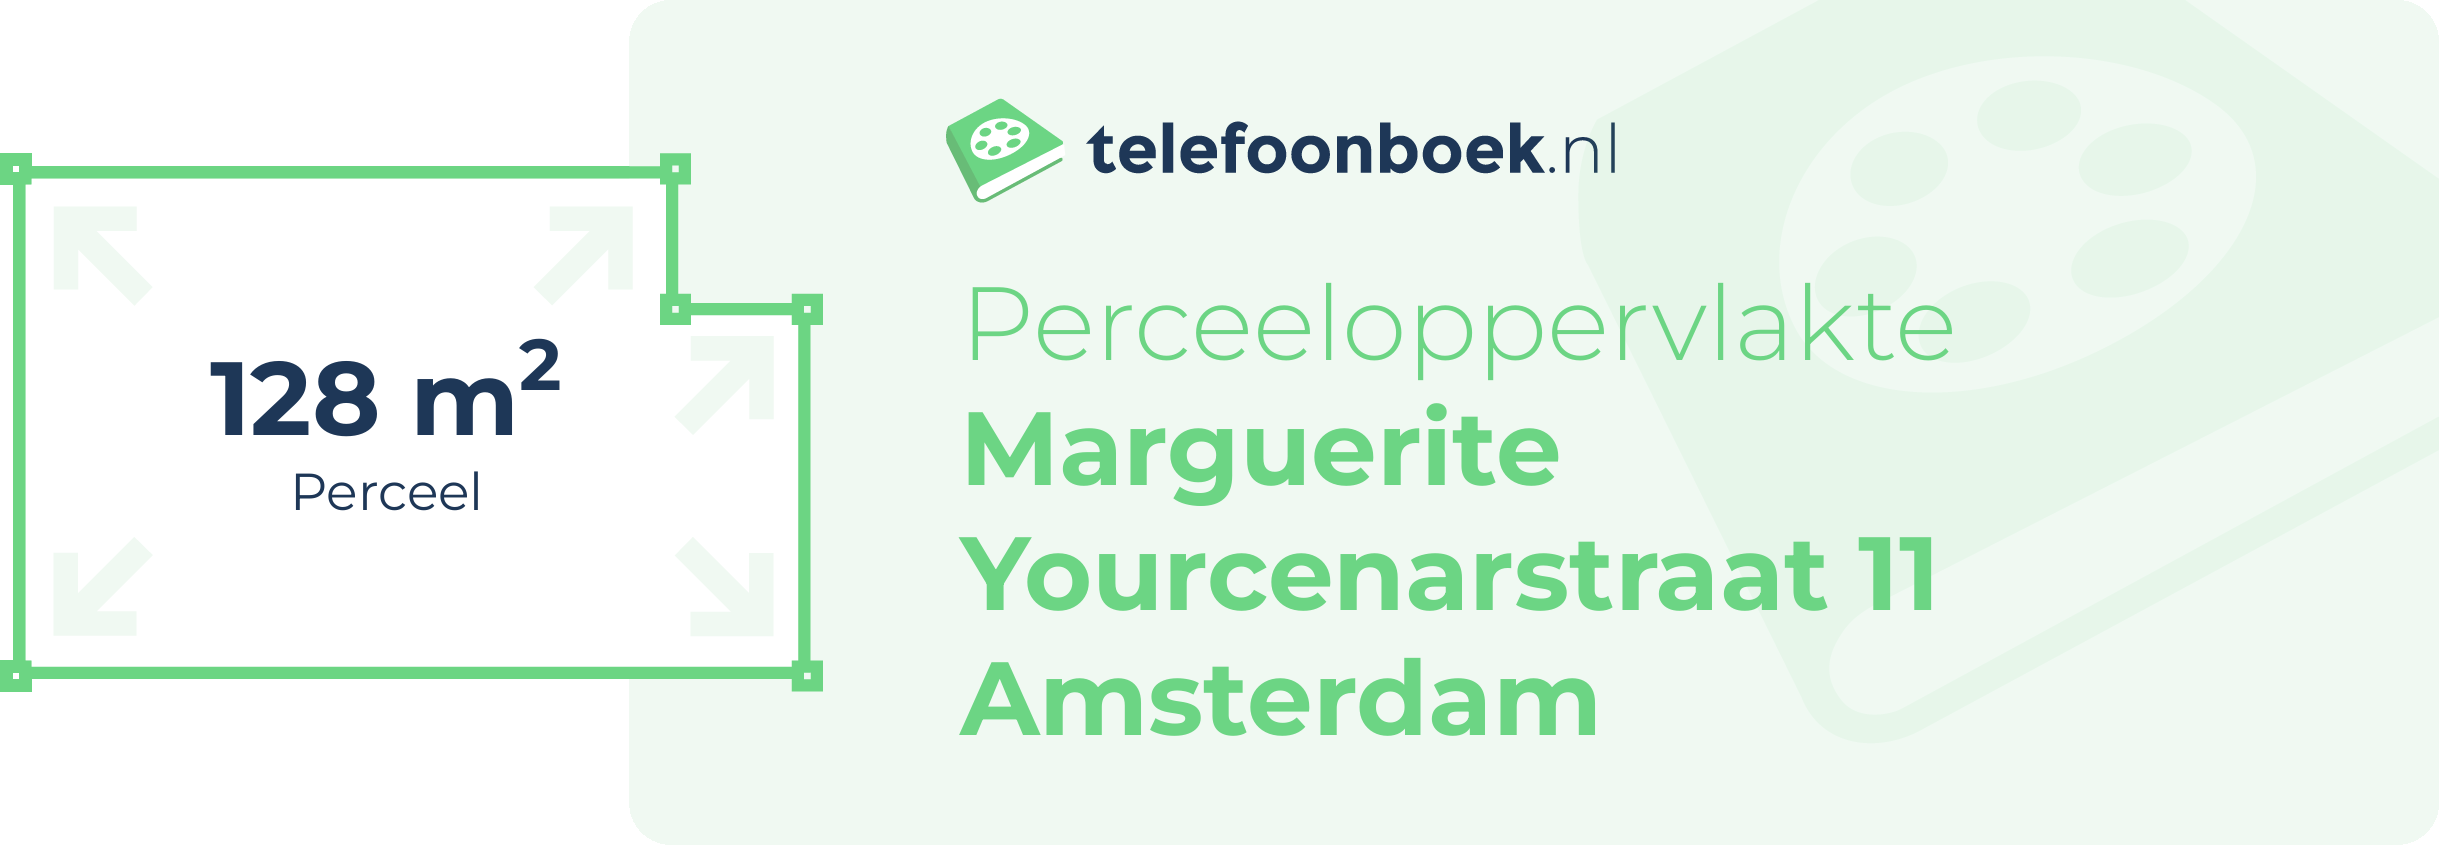 Perceeloppervlakte Marguerite Yourcenarstraat 11 Amsterdam